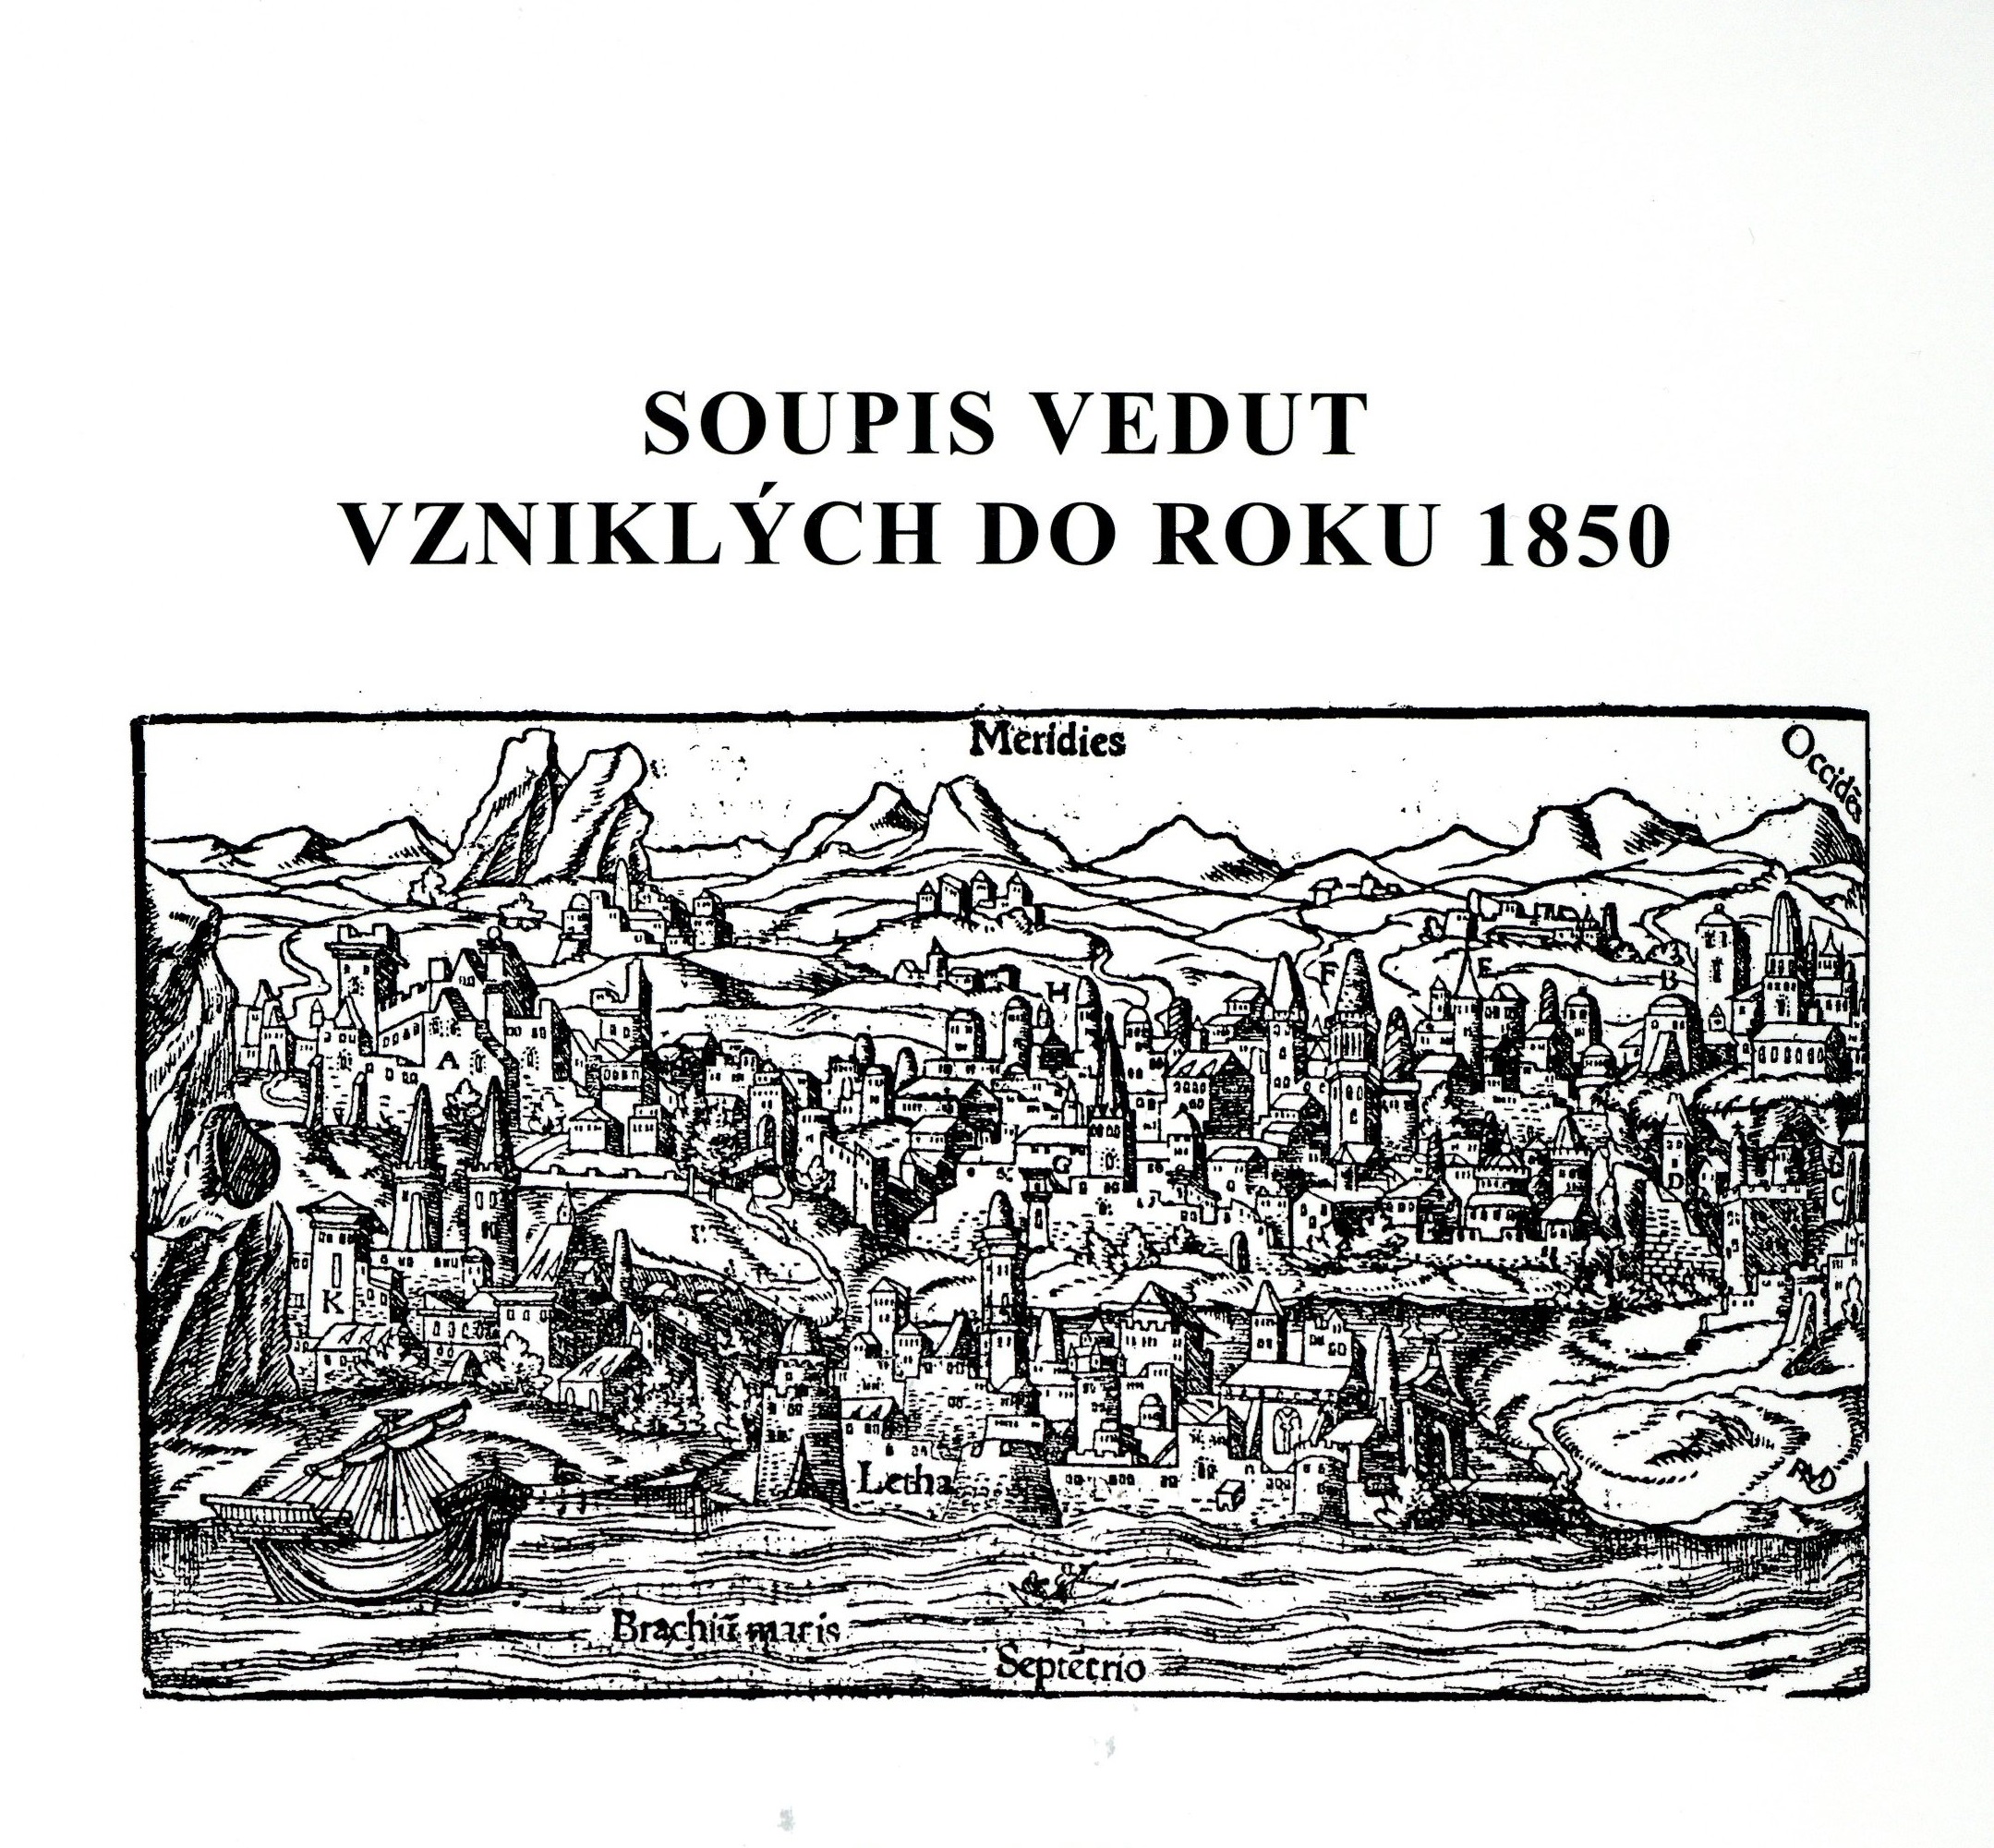 Soupis vedut vzniklych do 1850_mapova sbirka_1.jpg